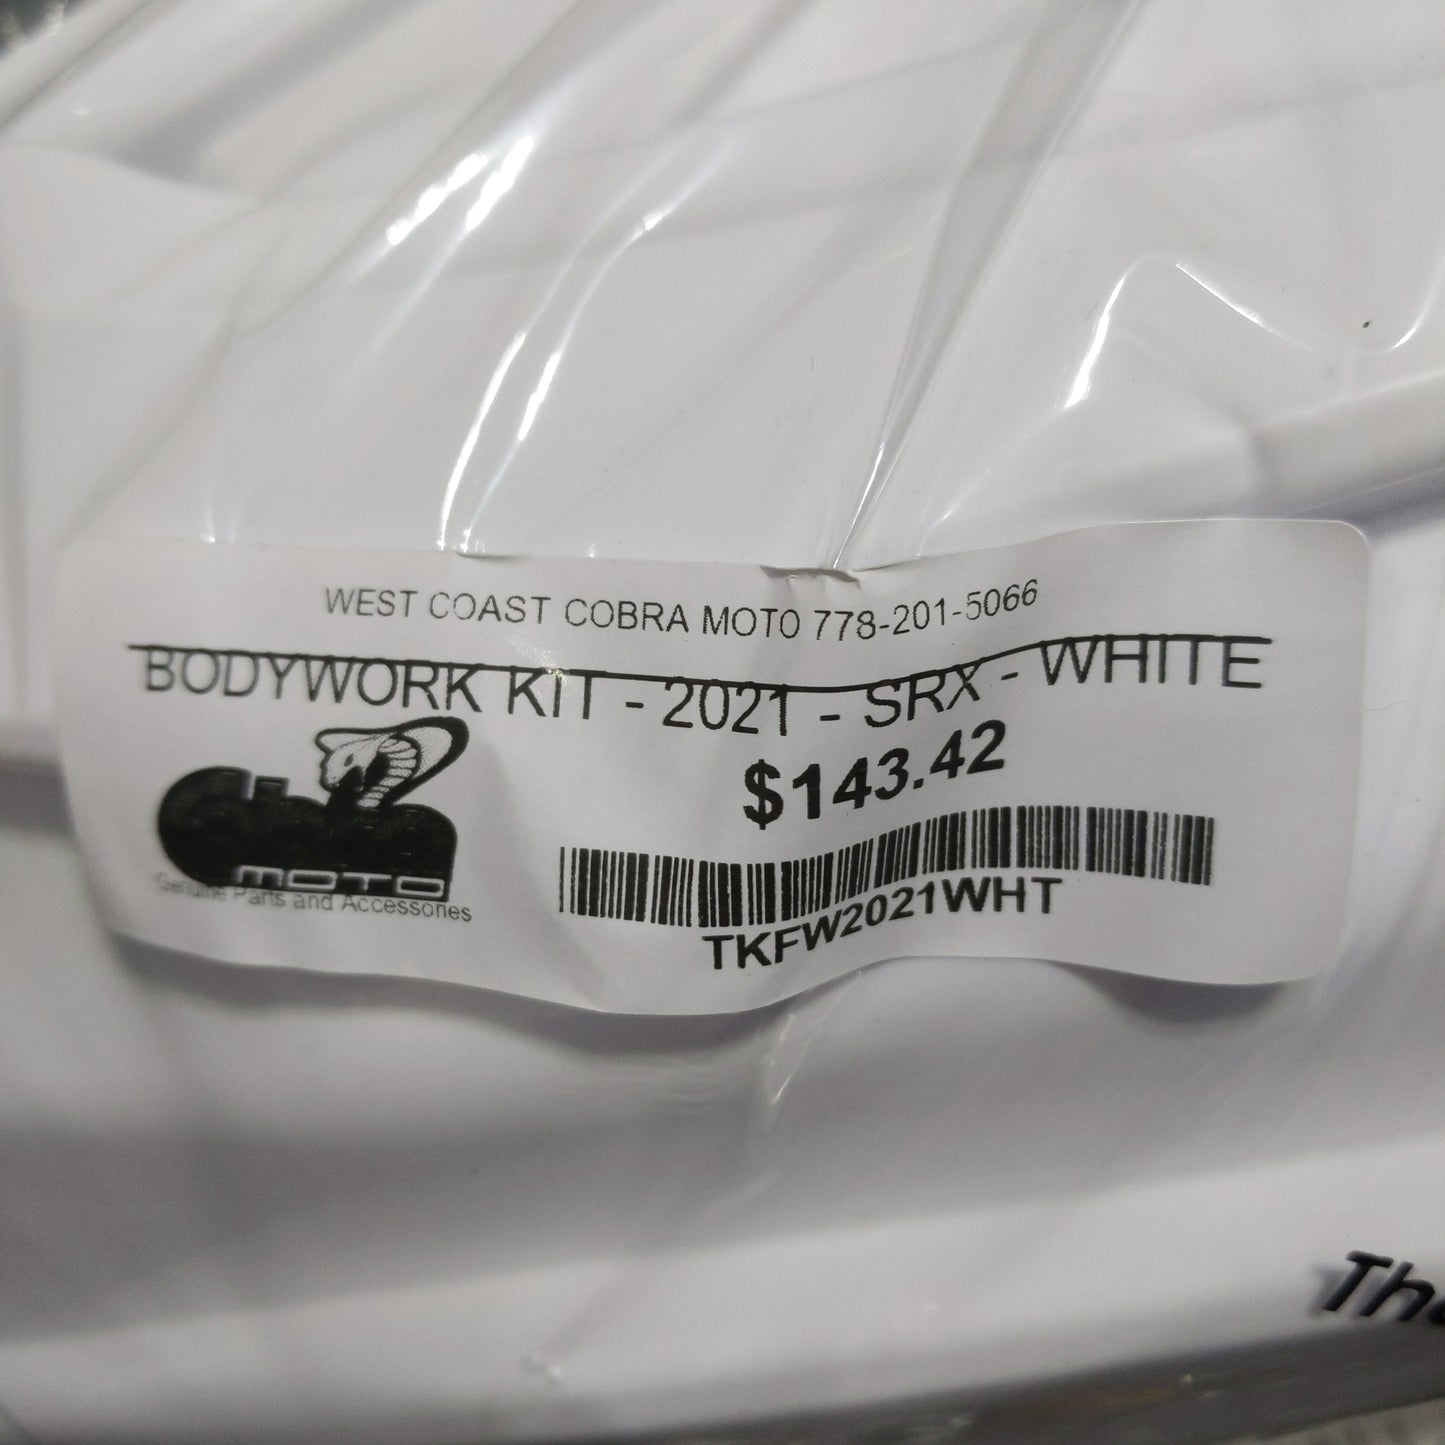 TKFW2021WHT BODYWORK KIT - 2021 - SRX - WHITE